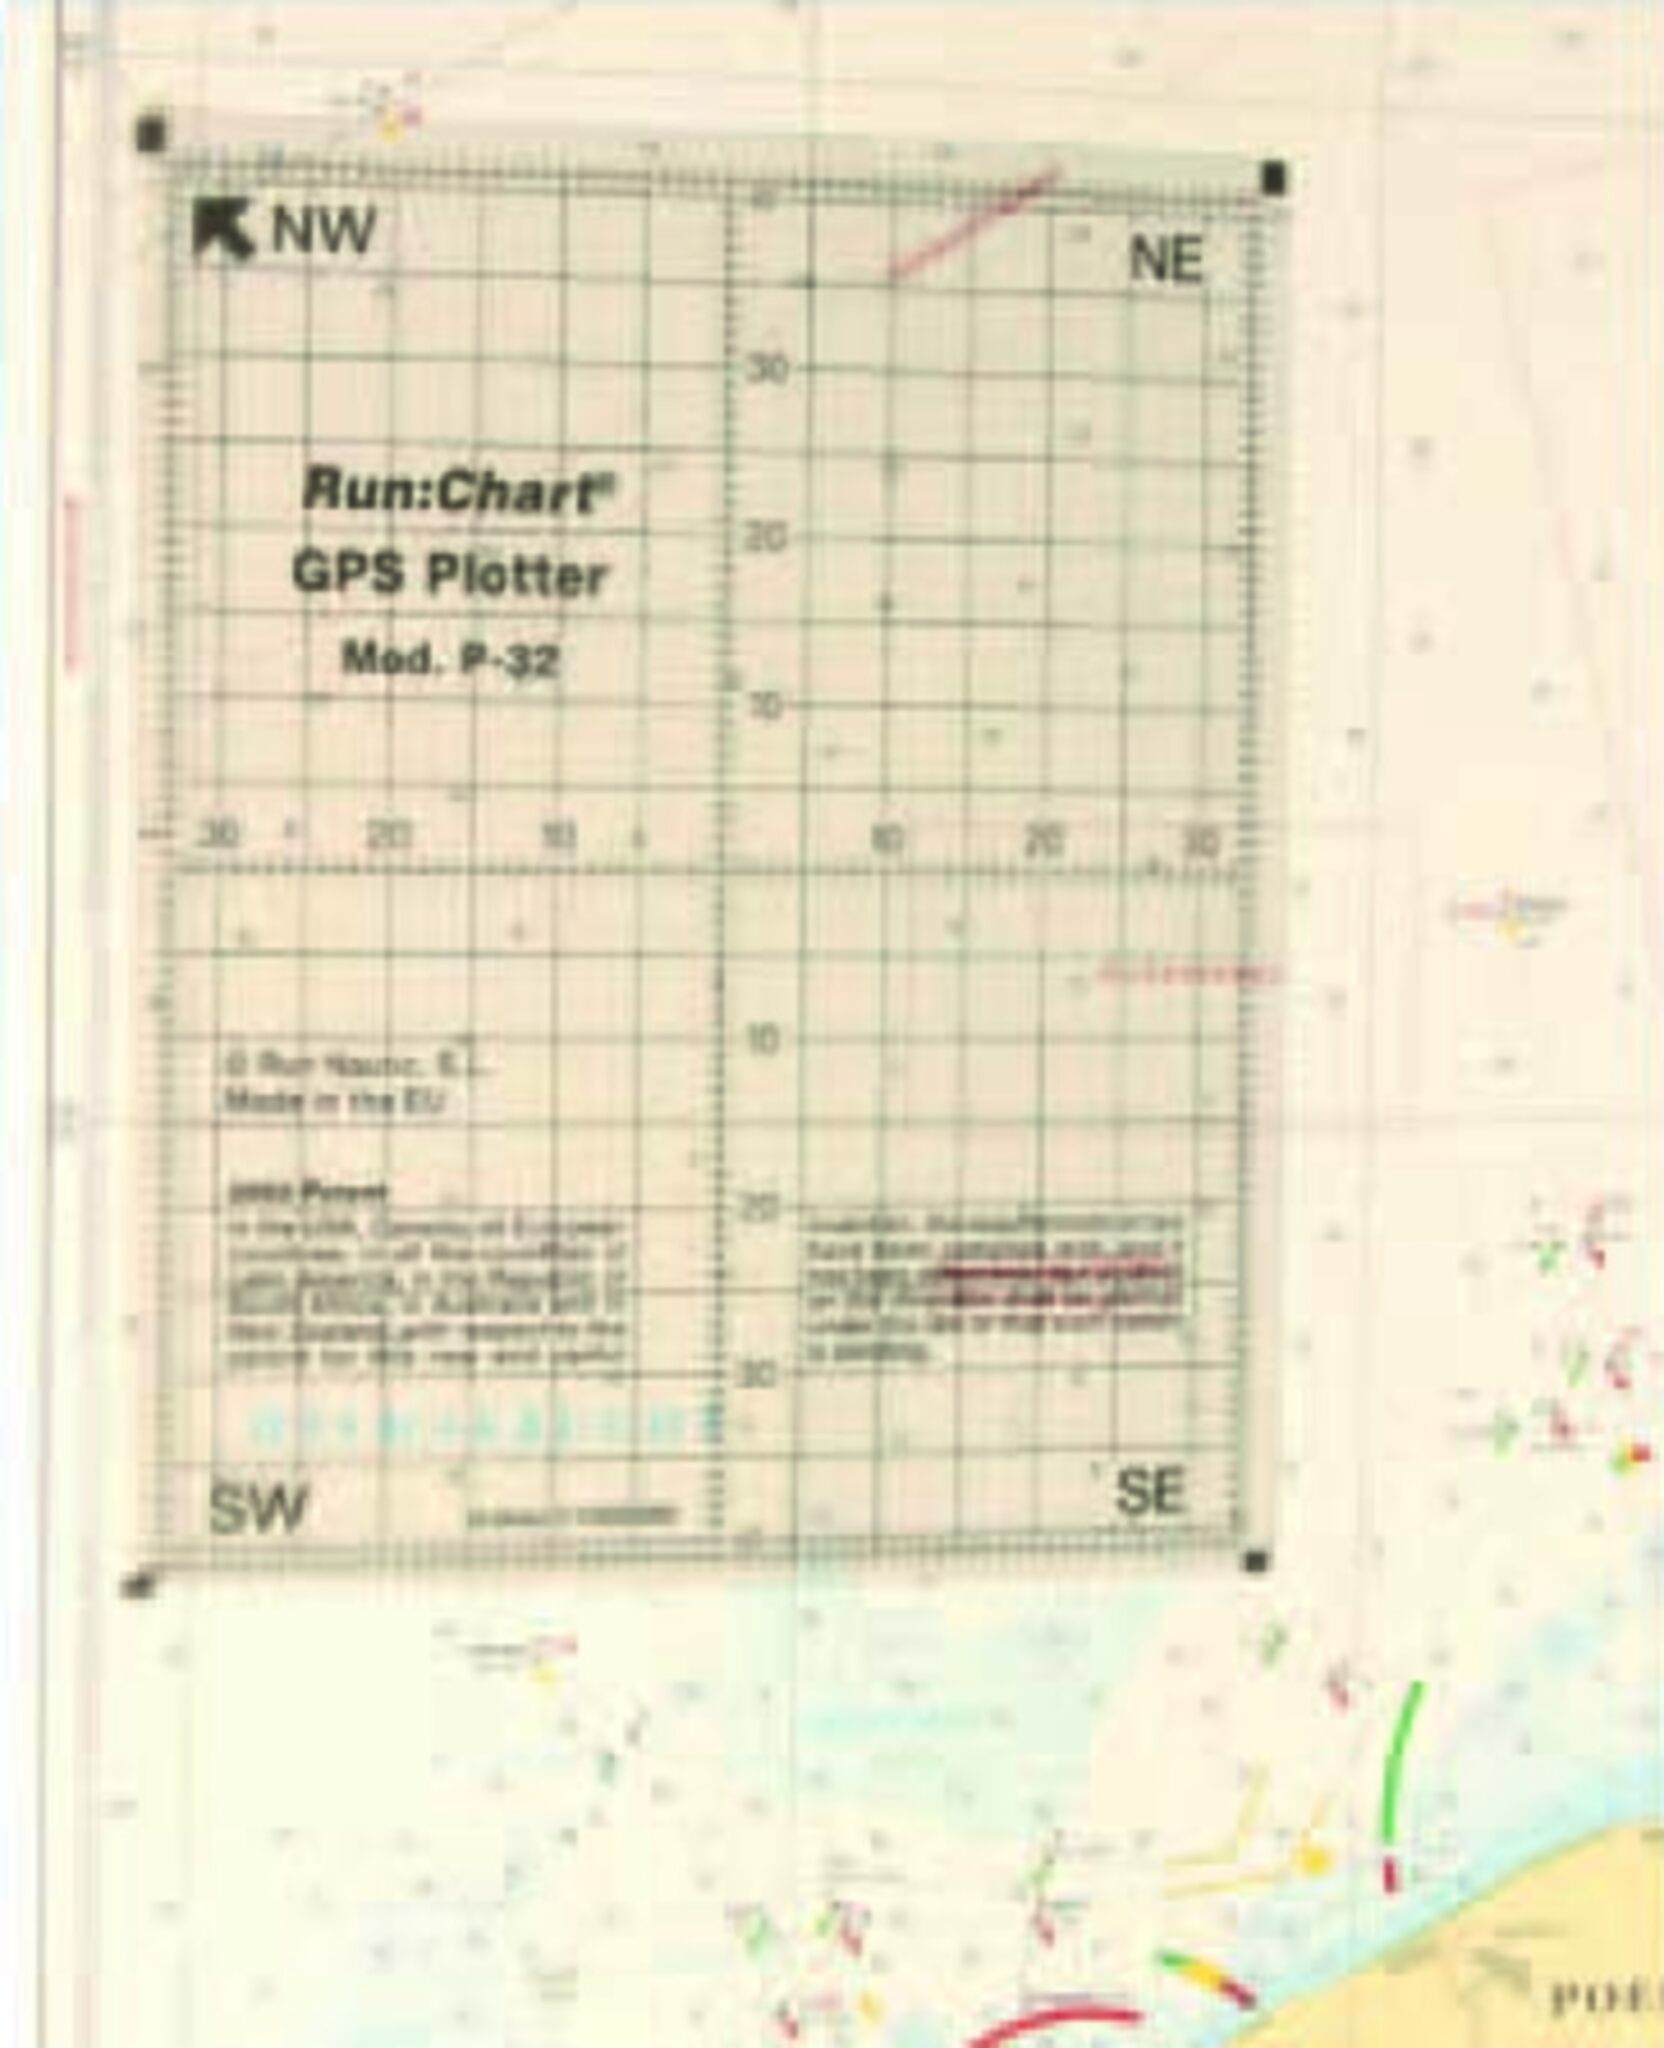 Runchart GPS Plotter